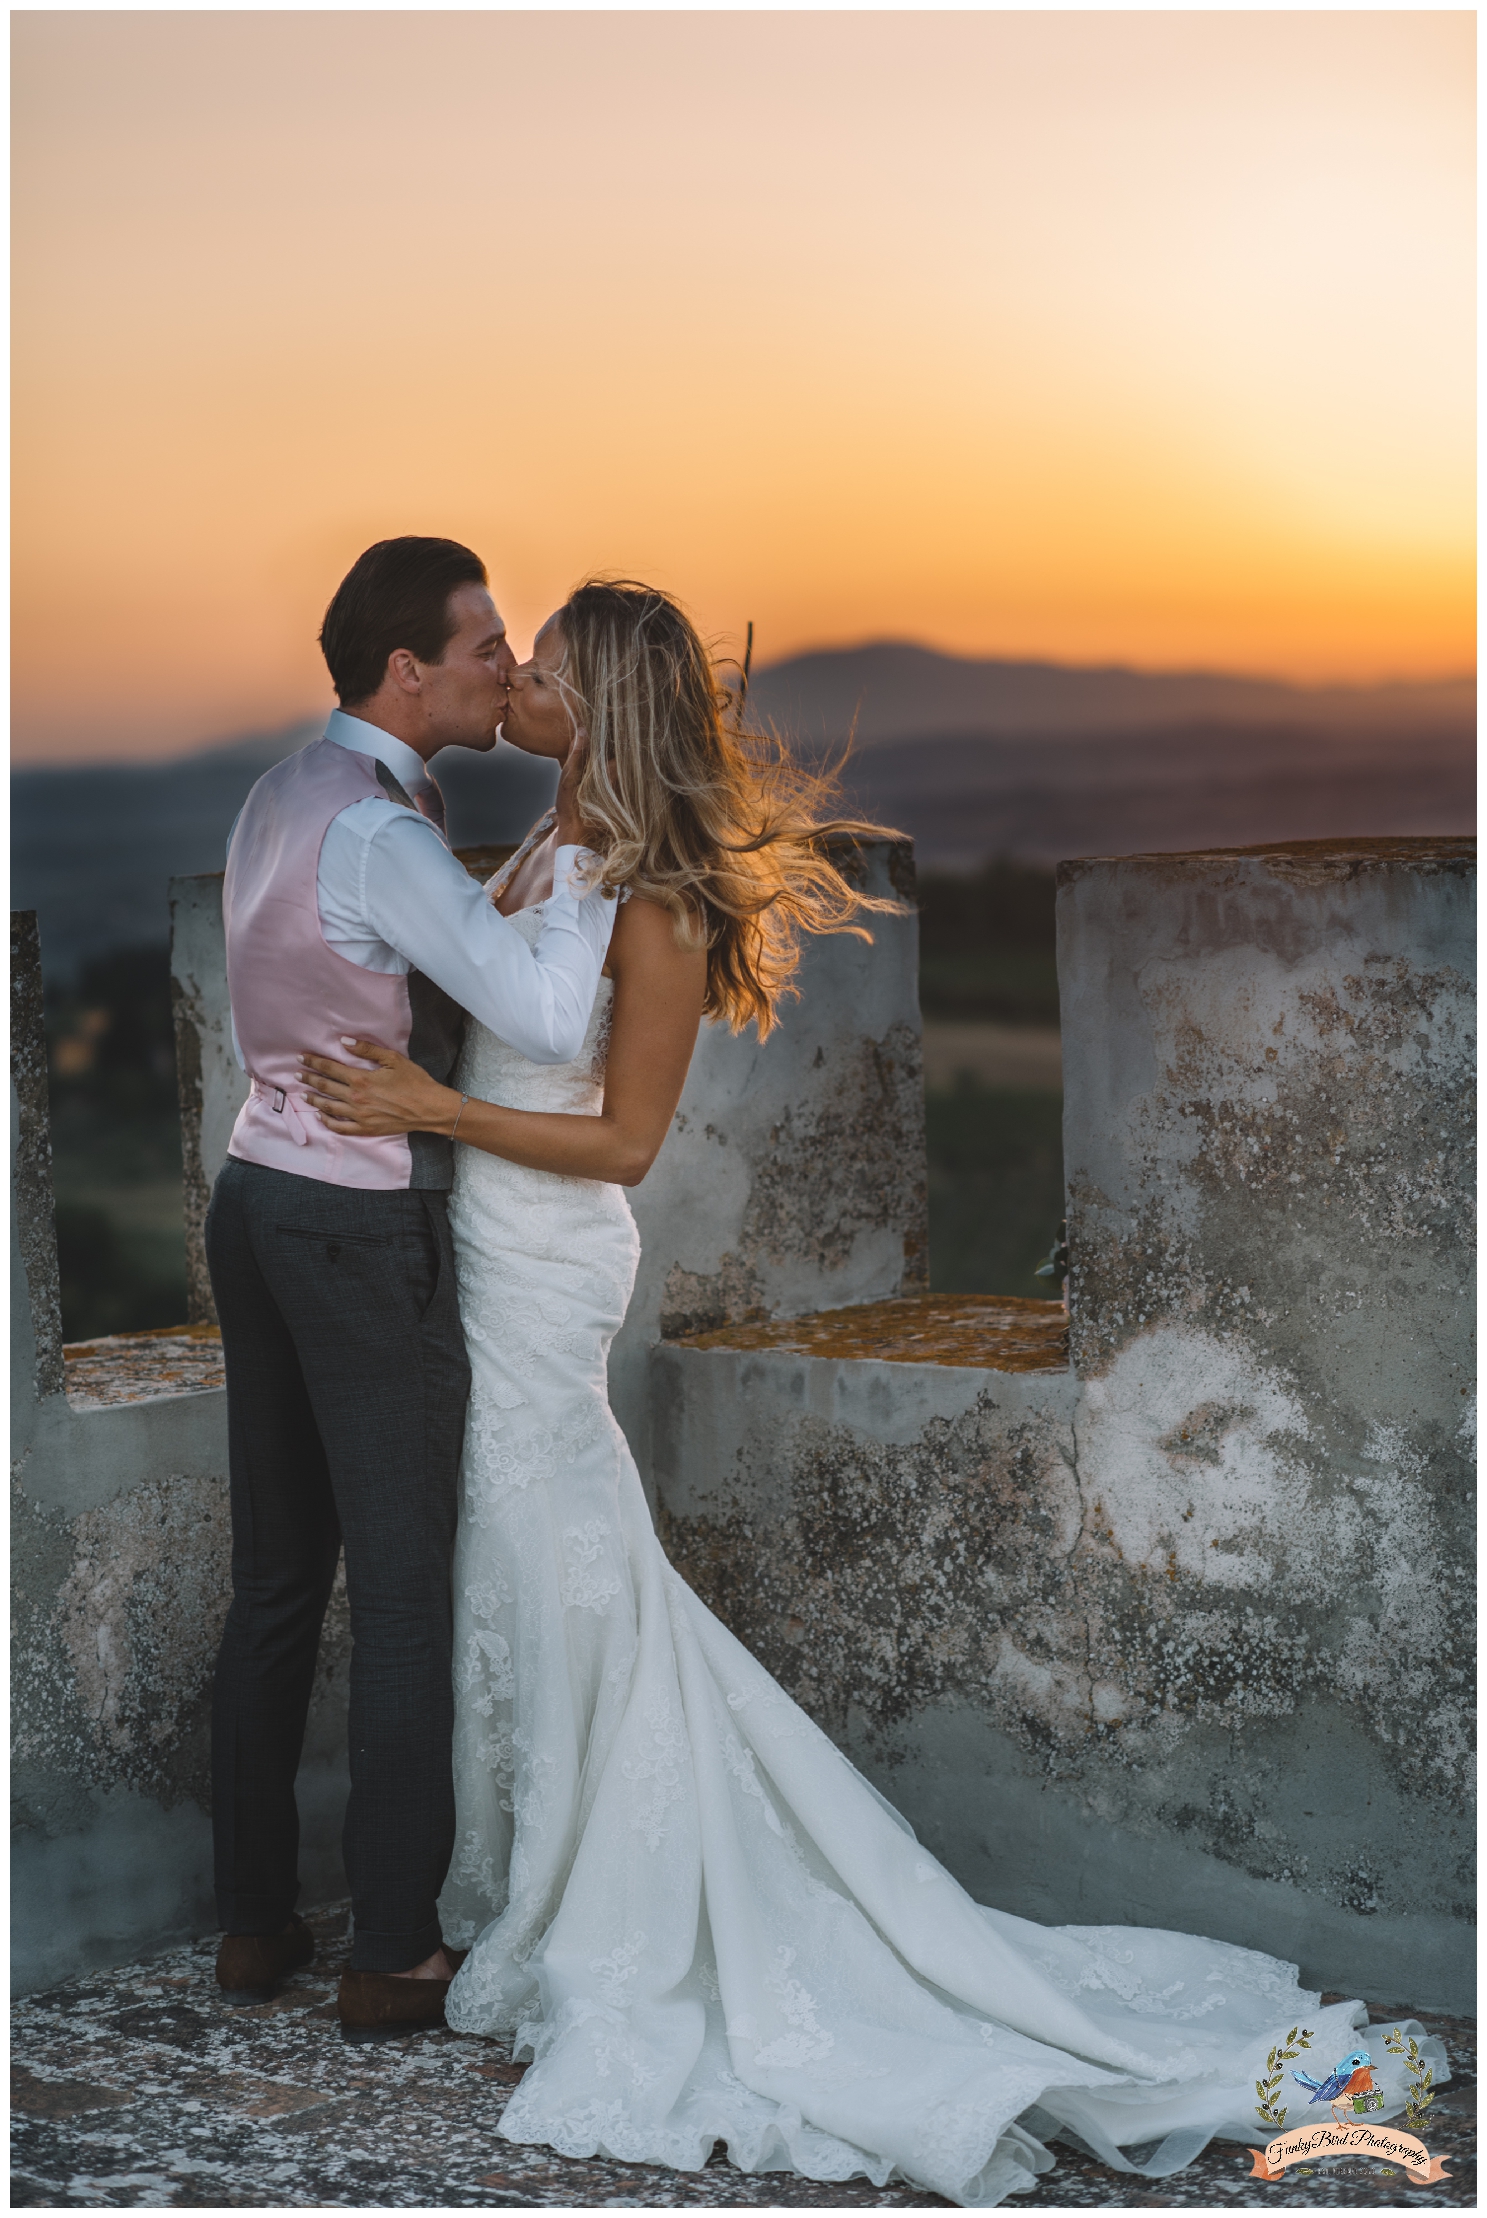 Wedding_Photographer_Tuscany_Florence_Italy_56.jpg